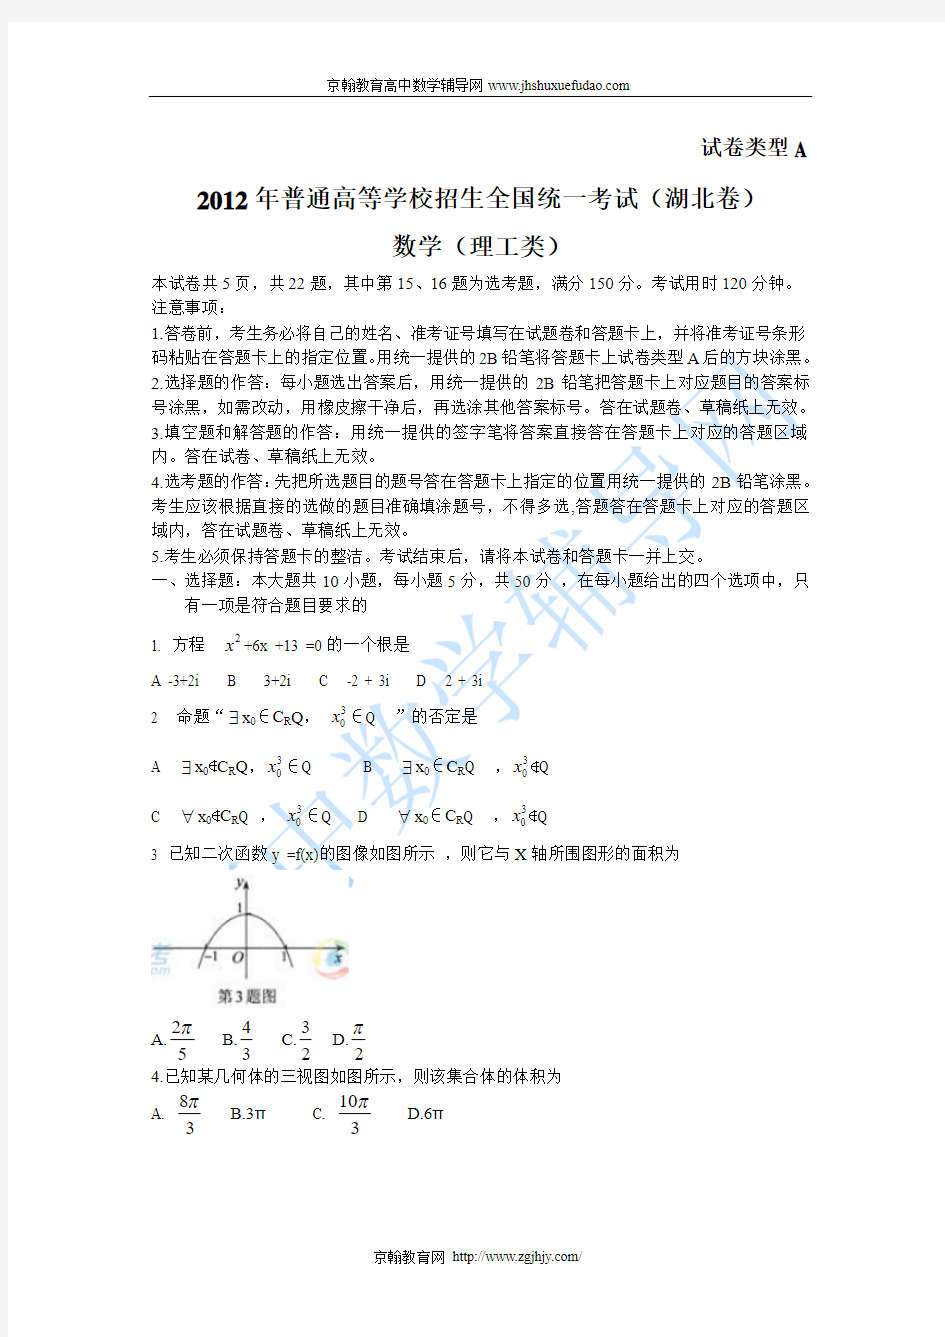 2012年高考数学理科试题湖北卷(word版)